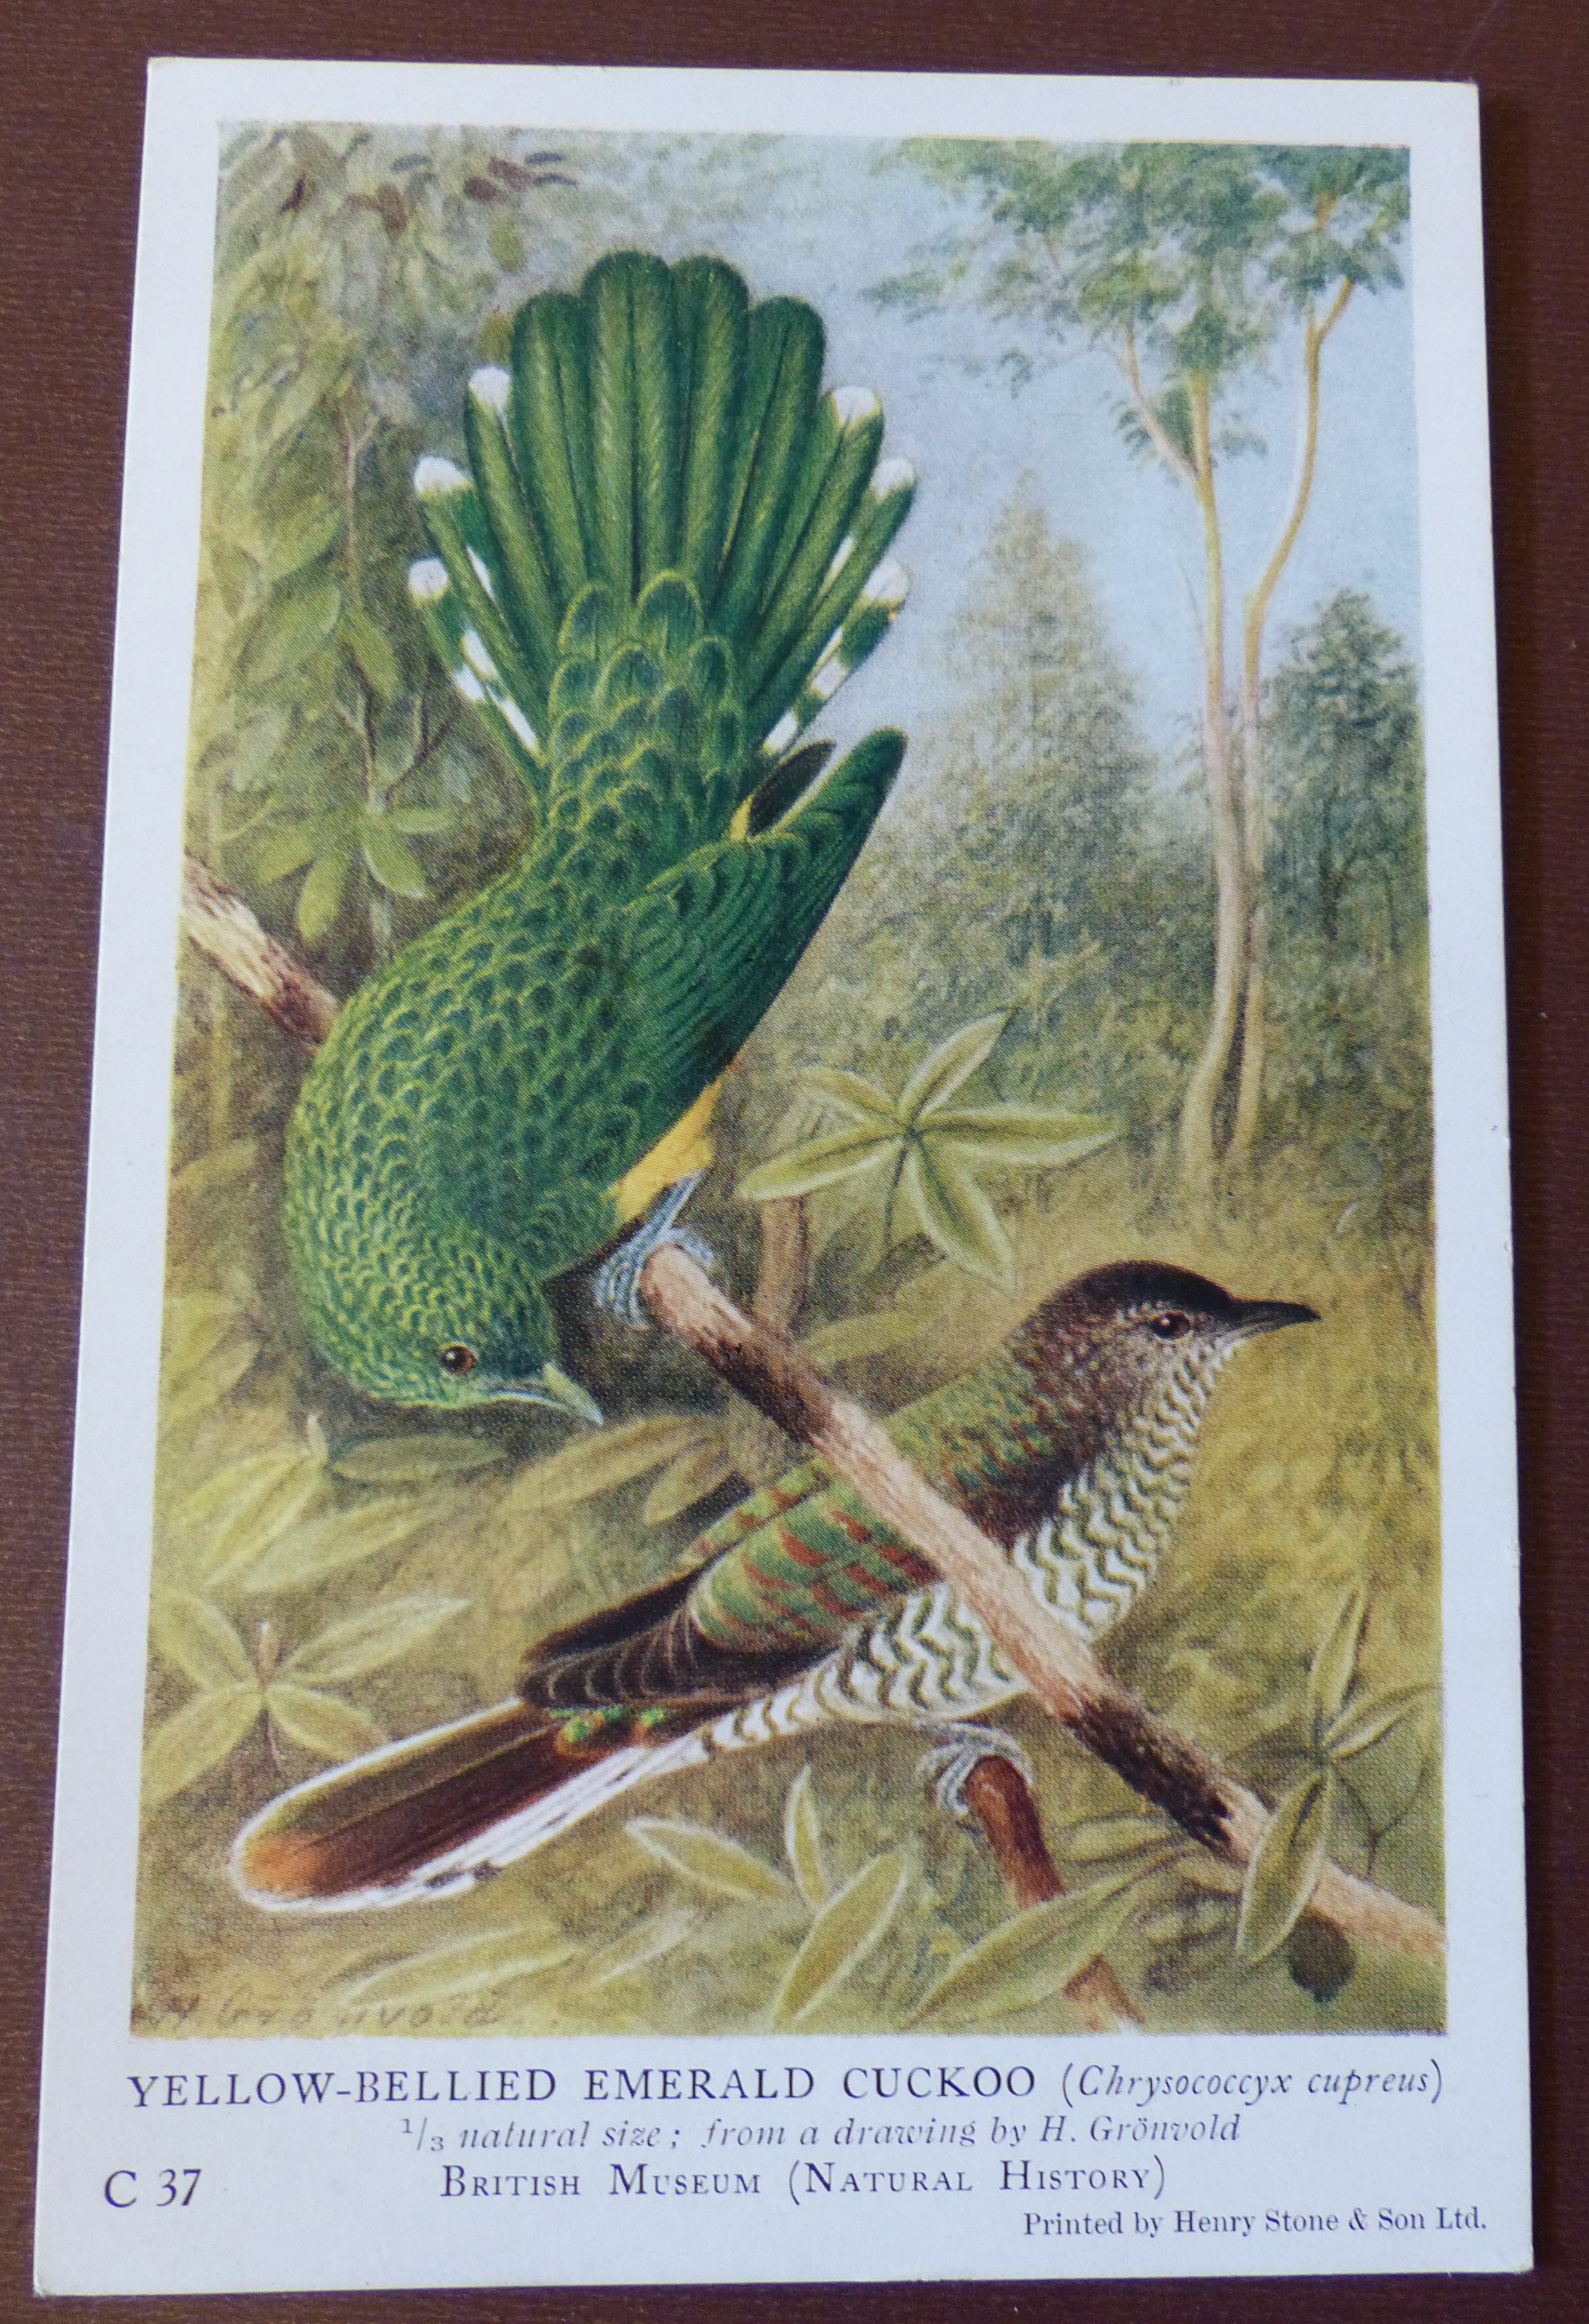 Emerald cuckoo